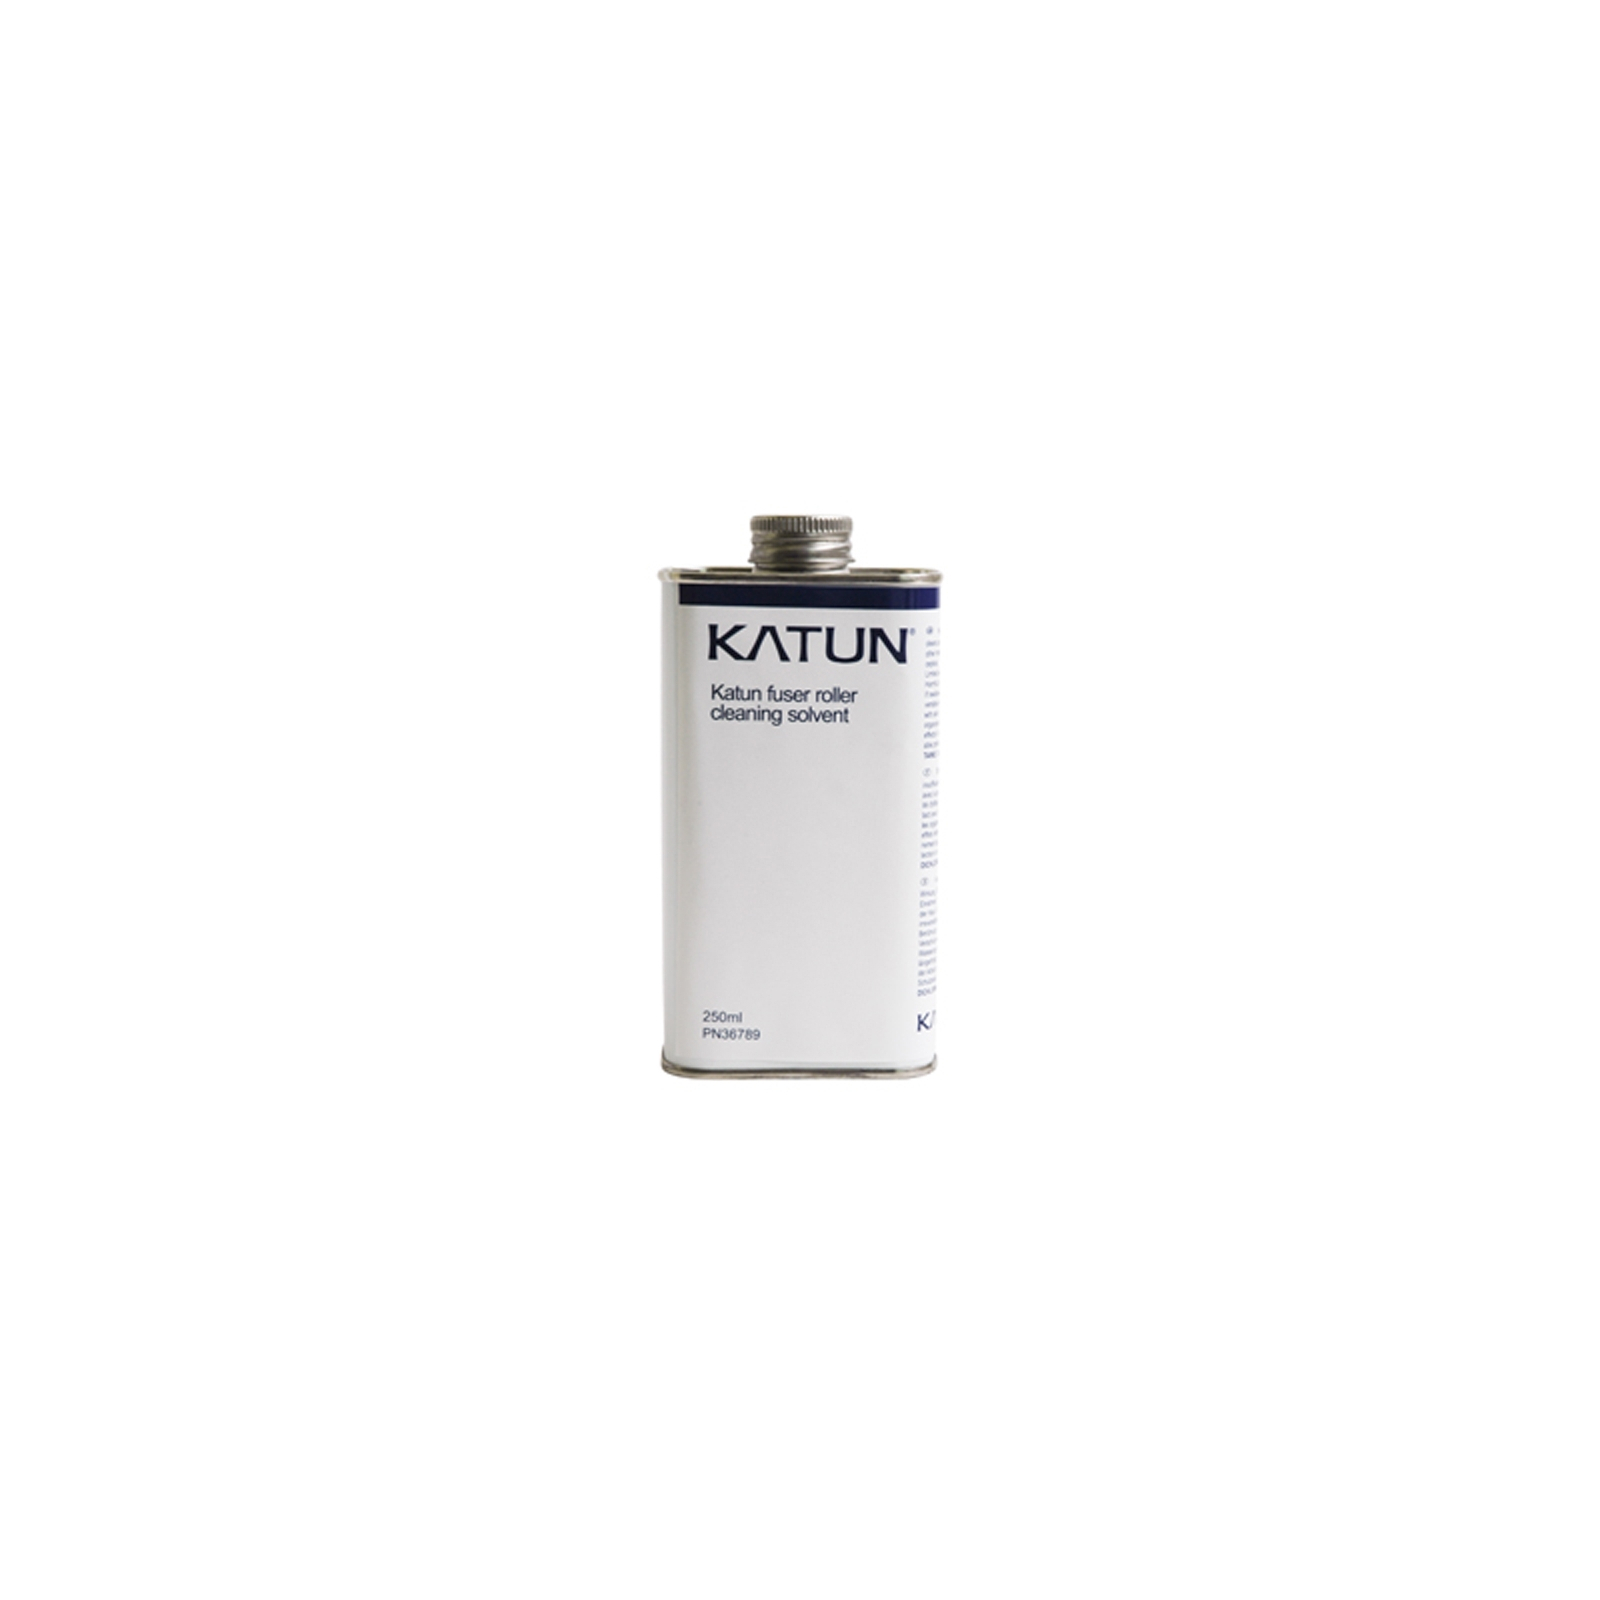 Чистящая жидкость Katun Fuser Roller Cleaning Solvent, 250 мл (36789)